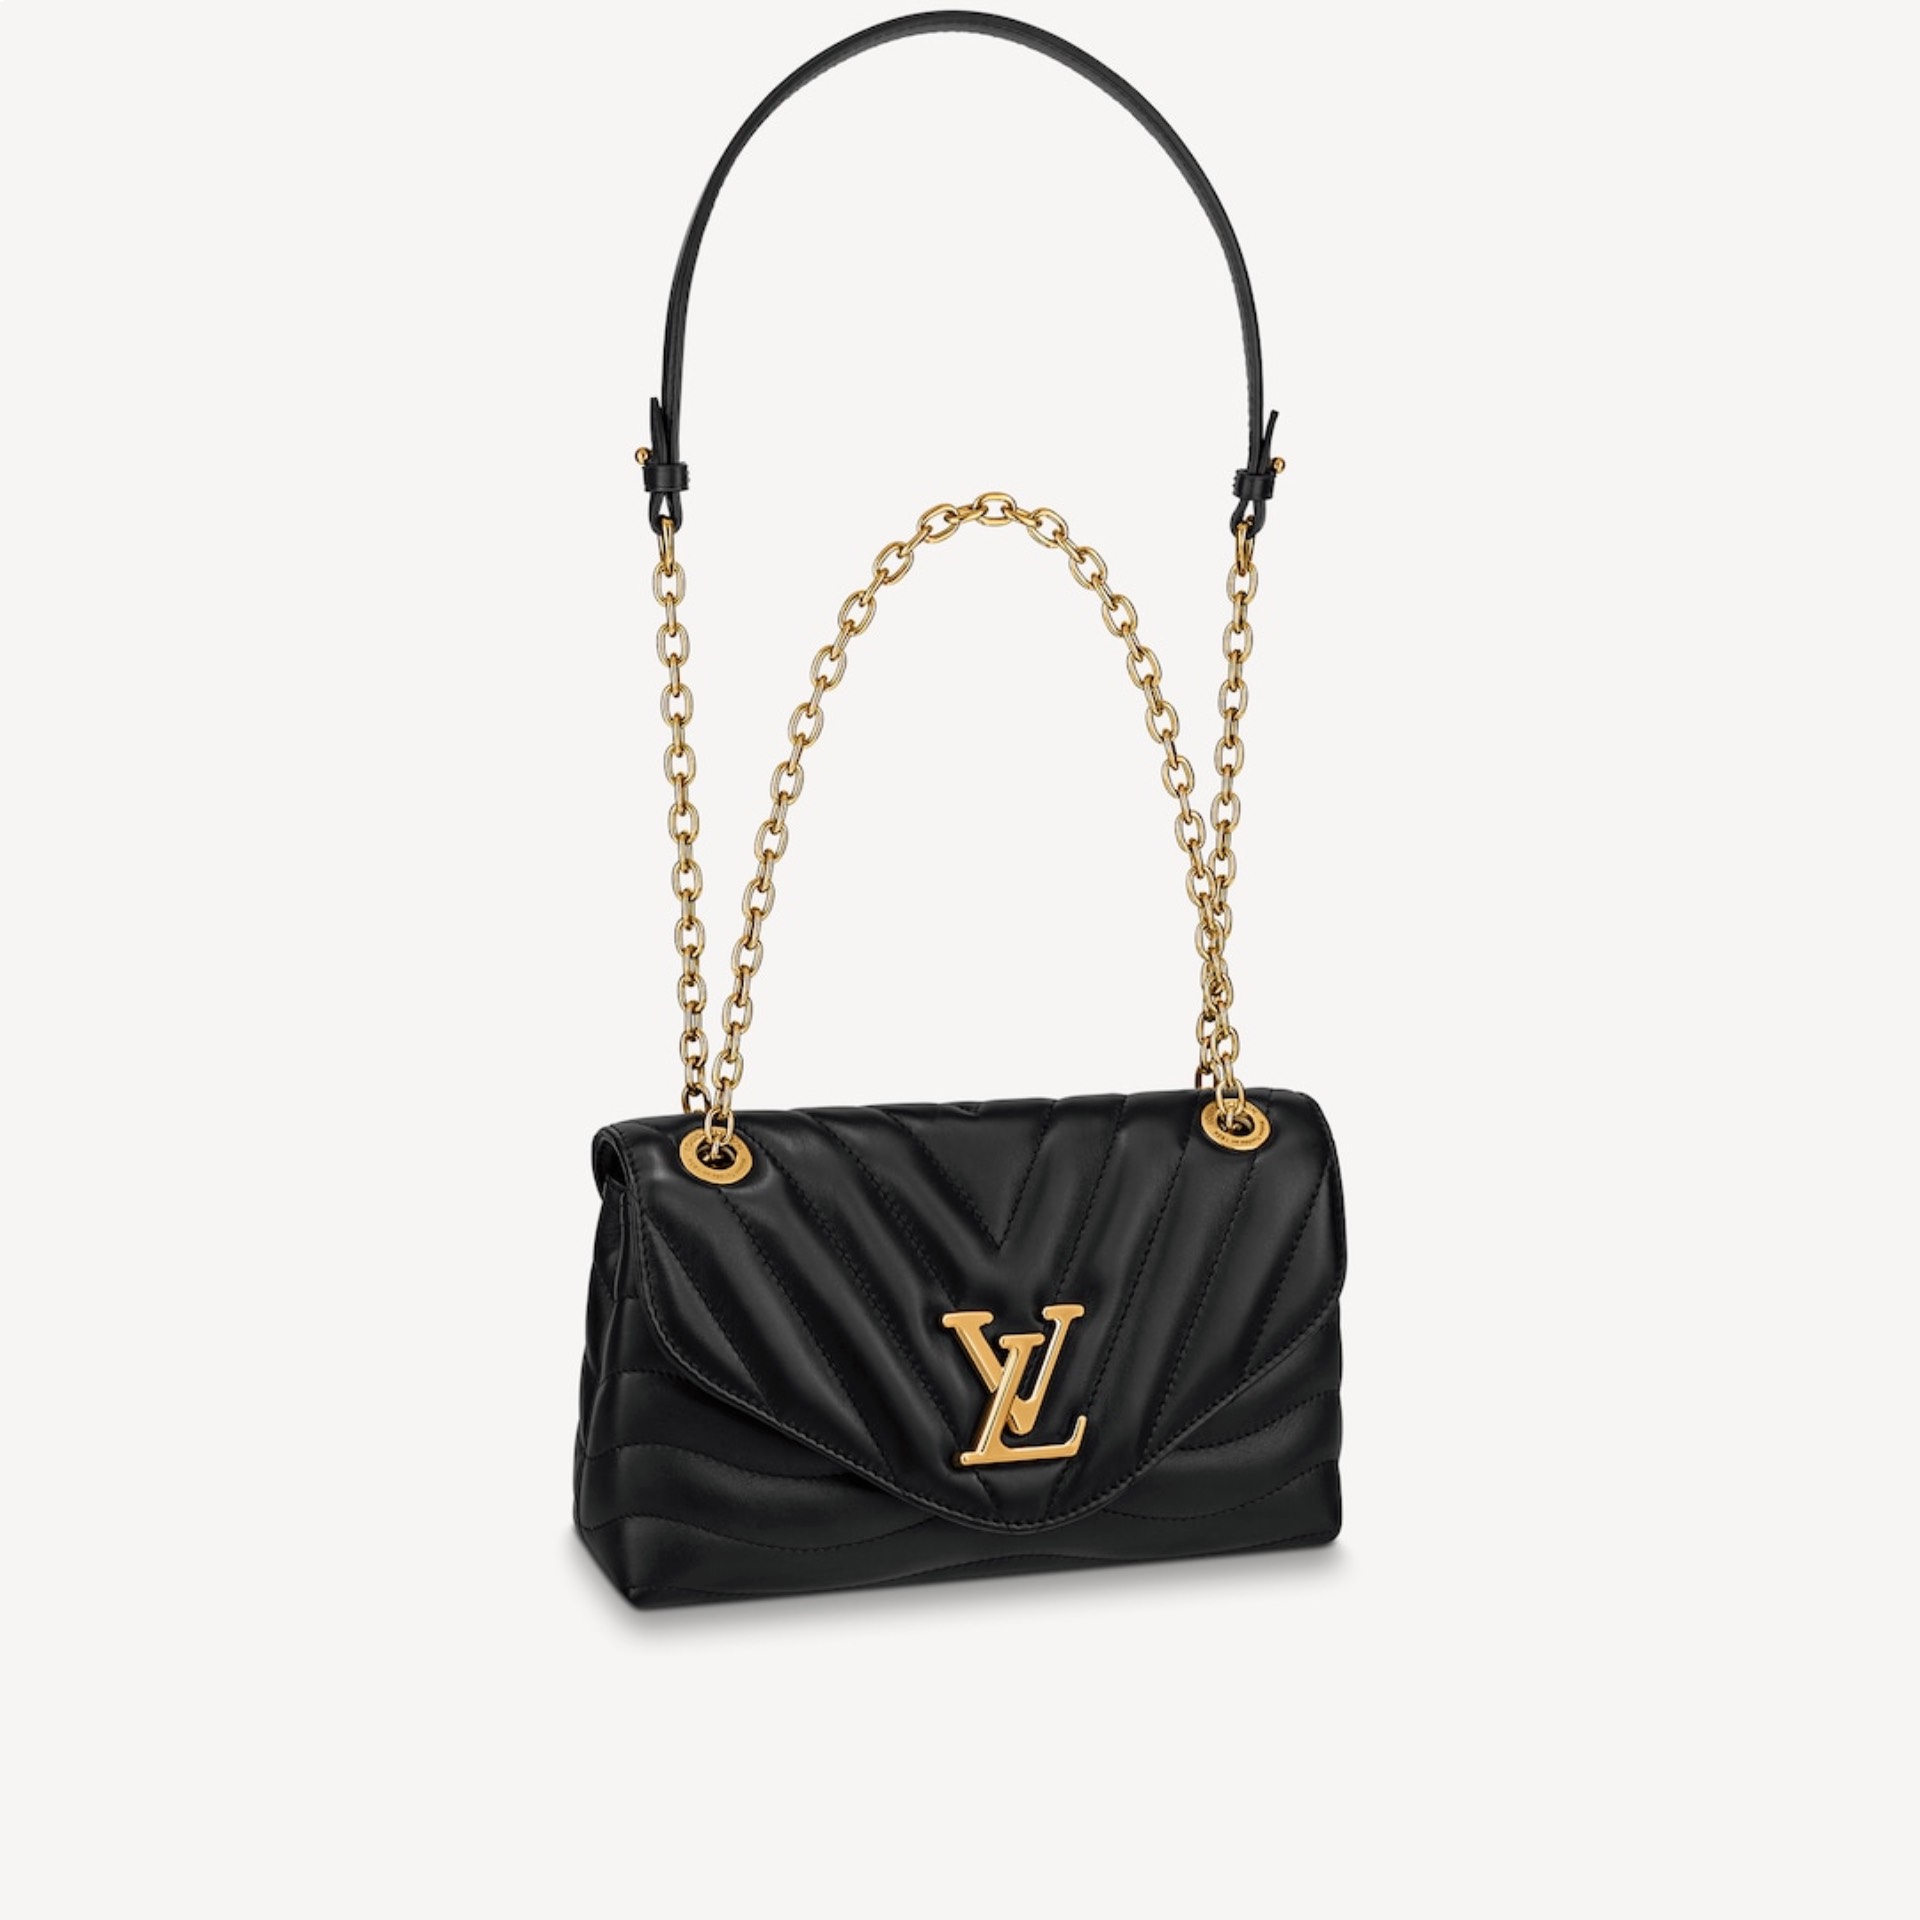 Laura Escanes presume de su bolso Louis Vuitton de más de 2.000 euros